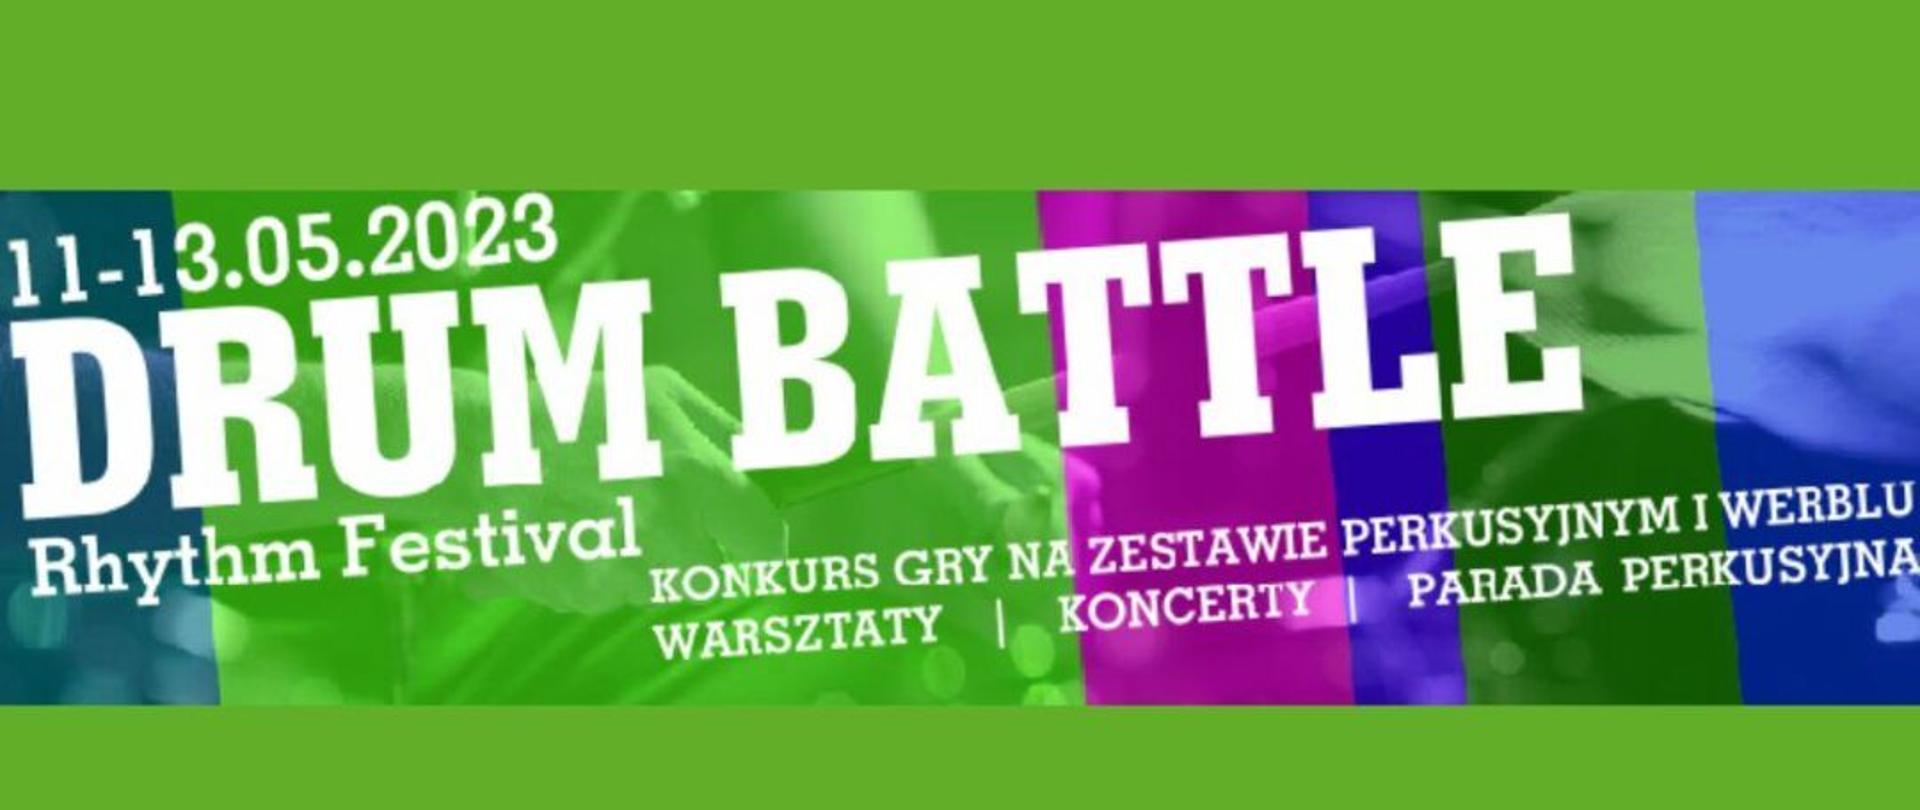 Grafika - baner reklamowy. na zielonym tle napisy: 11-13.05.2023 Legnica DRUM BATTLE Rhytm Festival Konkurs gry na zestawie perkusyjnym i werblu - warsztaty - koncerty - parada perkusyjna.